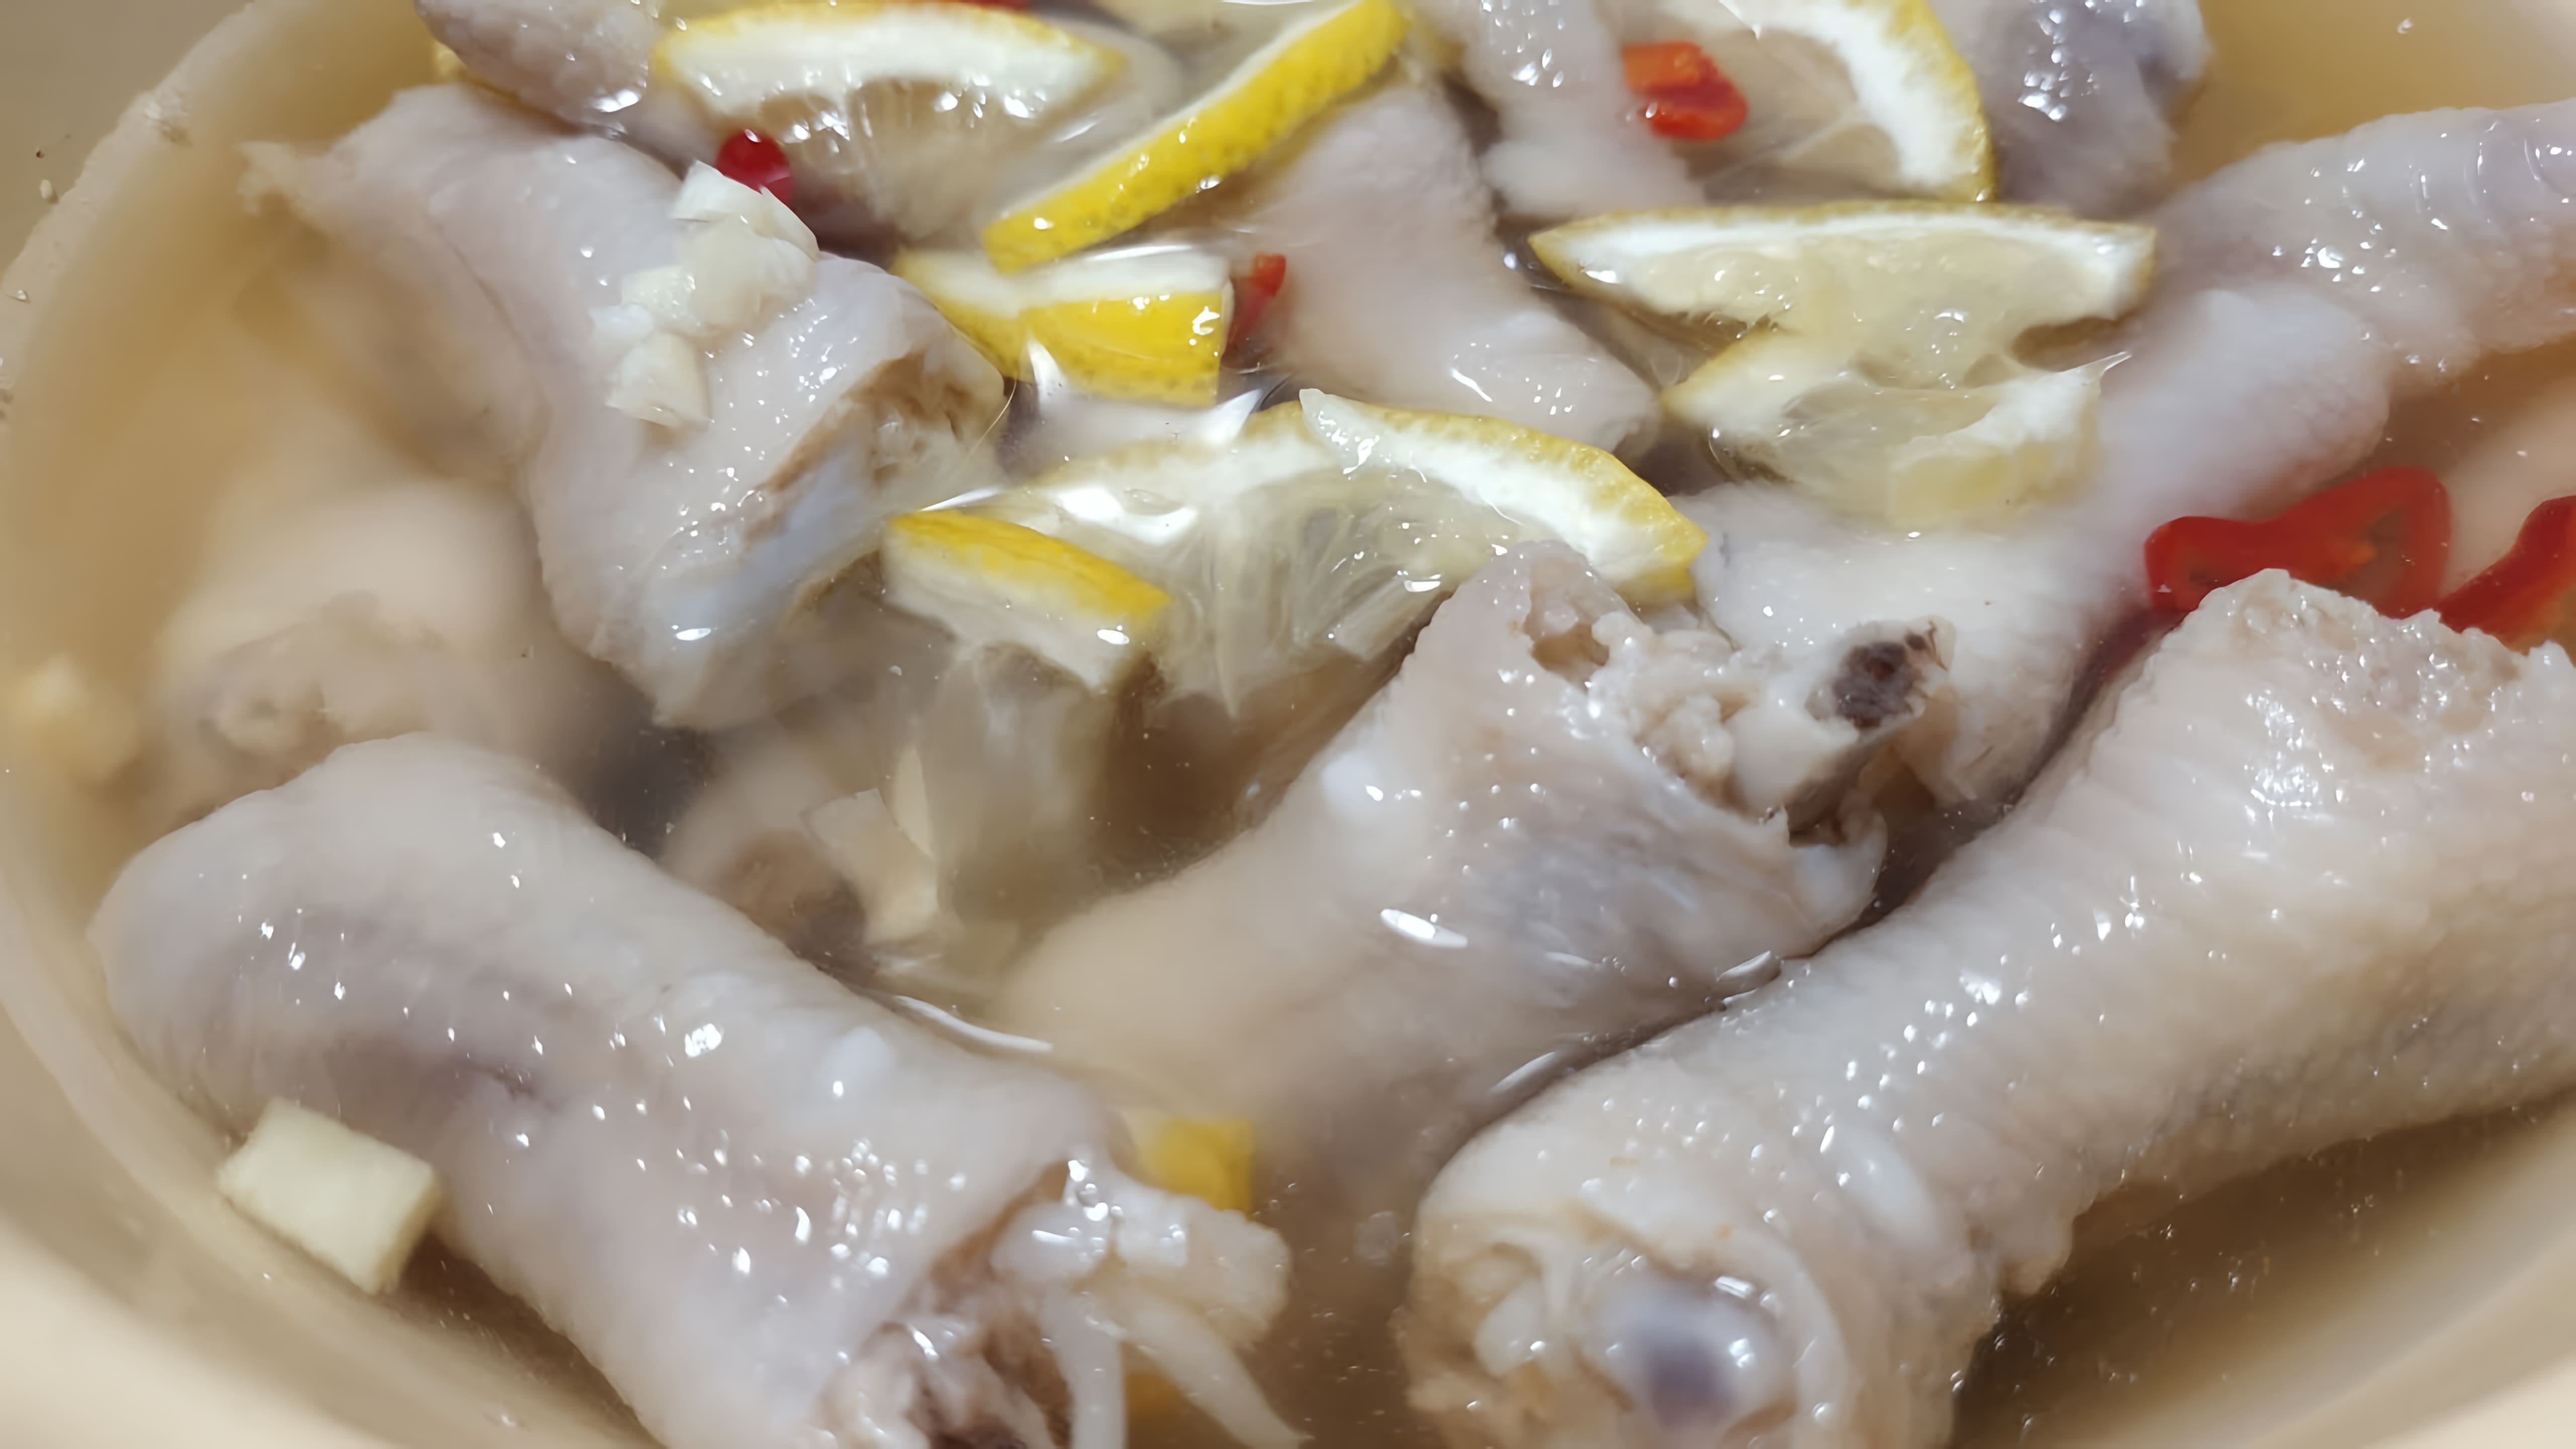 В этом видео демонстрируется процесс приготовления вкусной и бюджетной закуски из куриных лапок по вьетнамскому рецепту